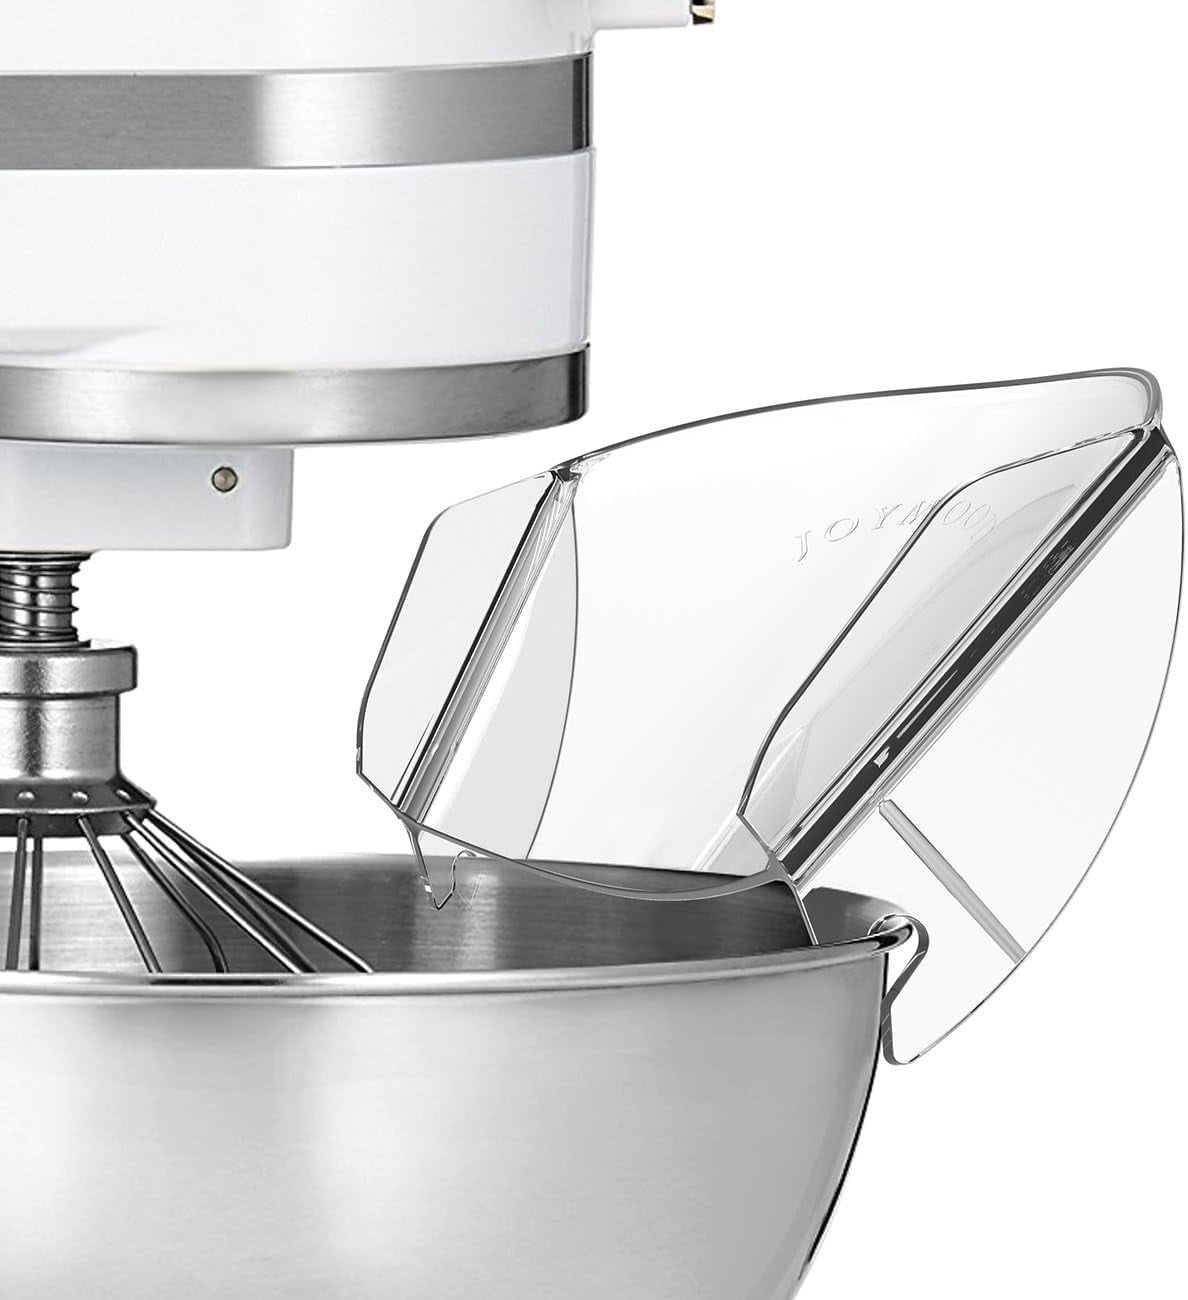 KitchenAid 7 Qt. Stand Mixer in Silver - KSM70SKXXCU